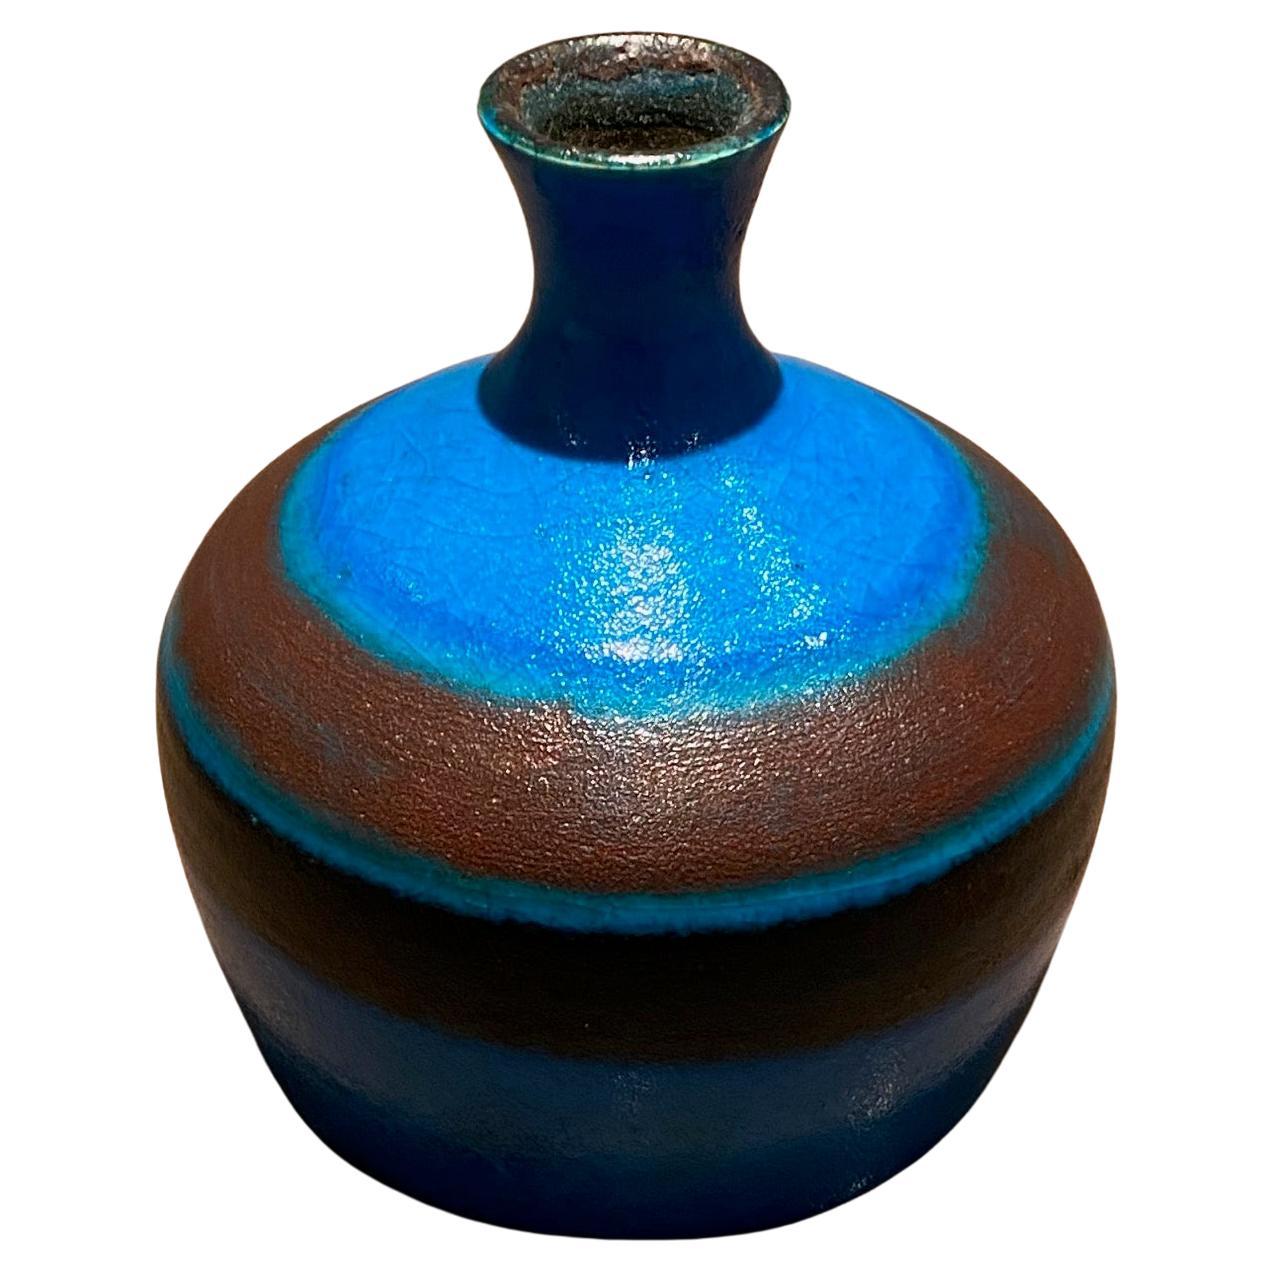 Glänzende blau-braun emaillierte kleine Vase von Bruno Gambone
Maße: H 15 cm x L 14 cm
Am Sockel vom Künstler signiert Gambone Italy.

